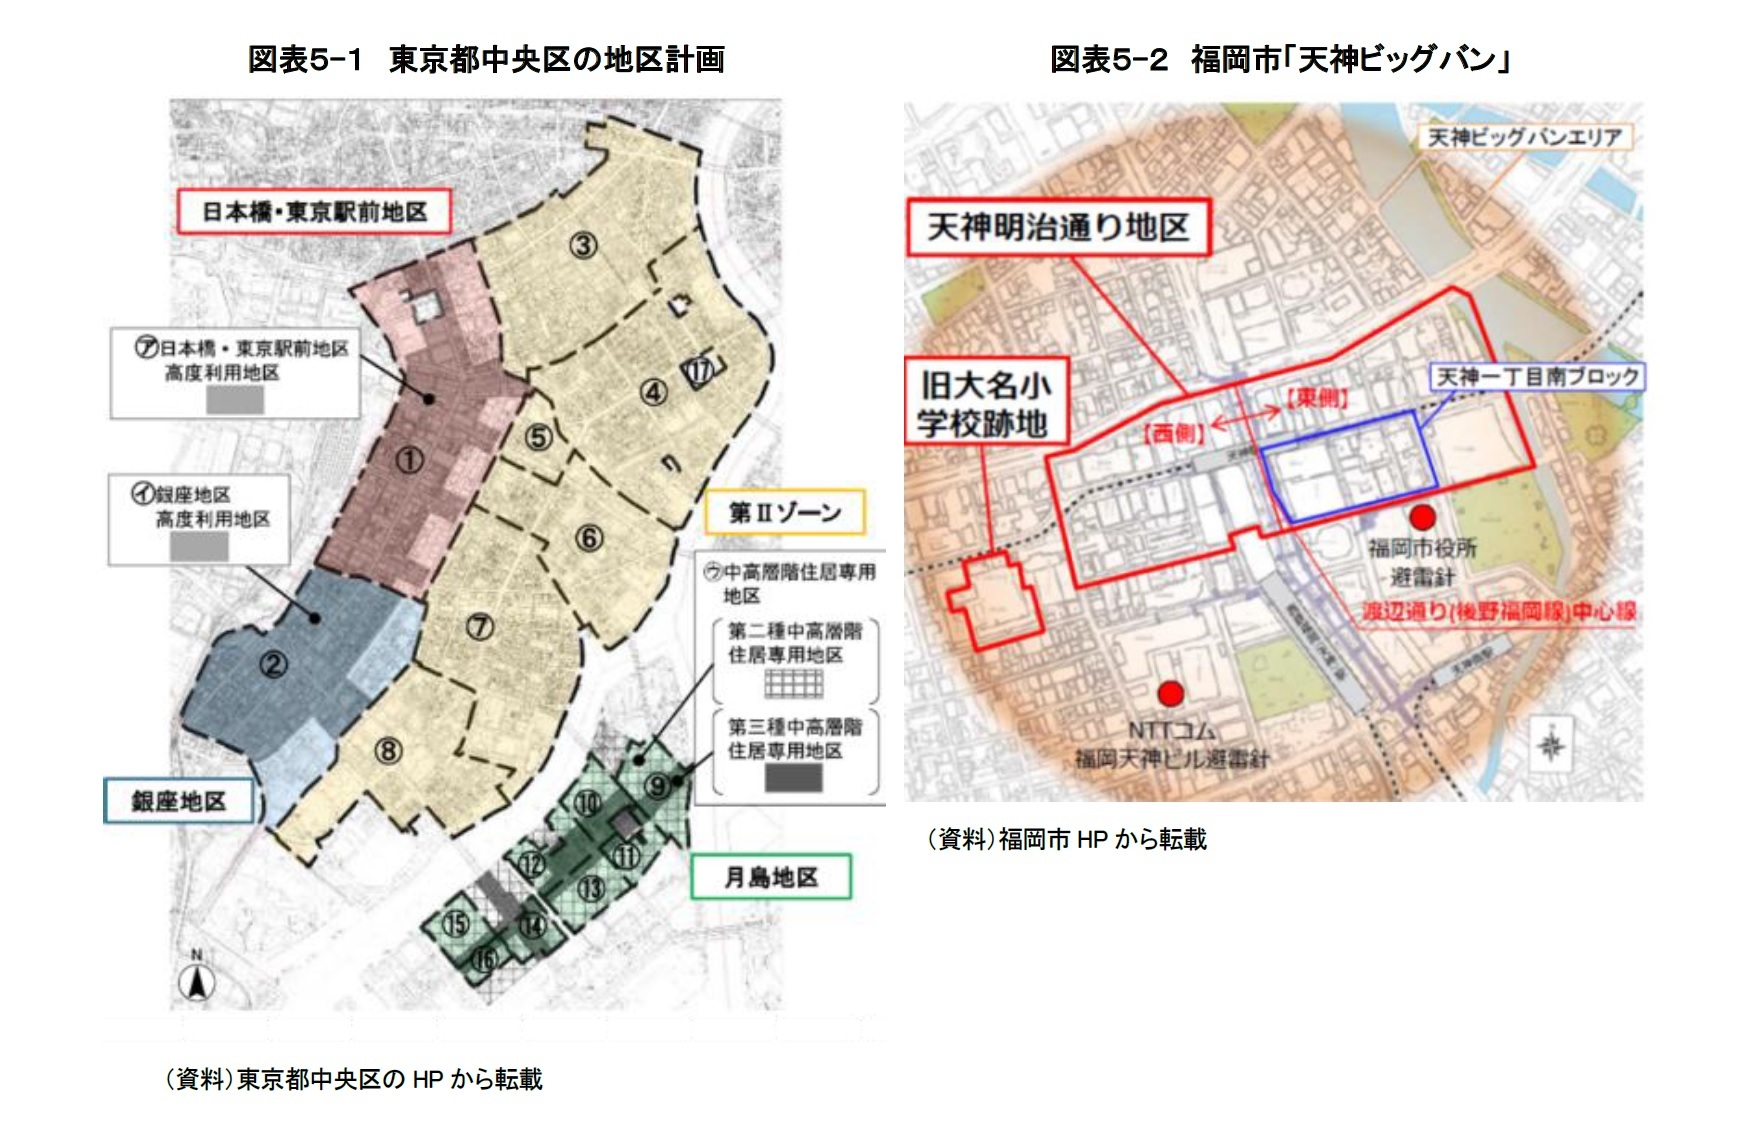 （図表５-１）東京都中央区の地区計画/（図表５-２）福岡市「天神ビッグバン」